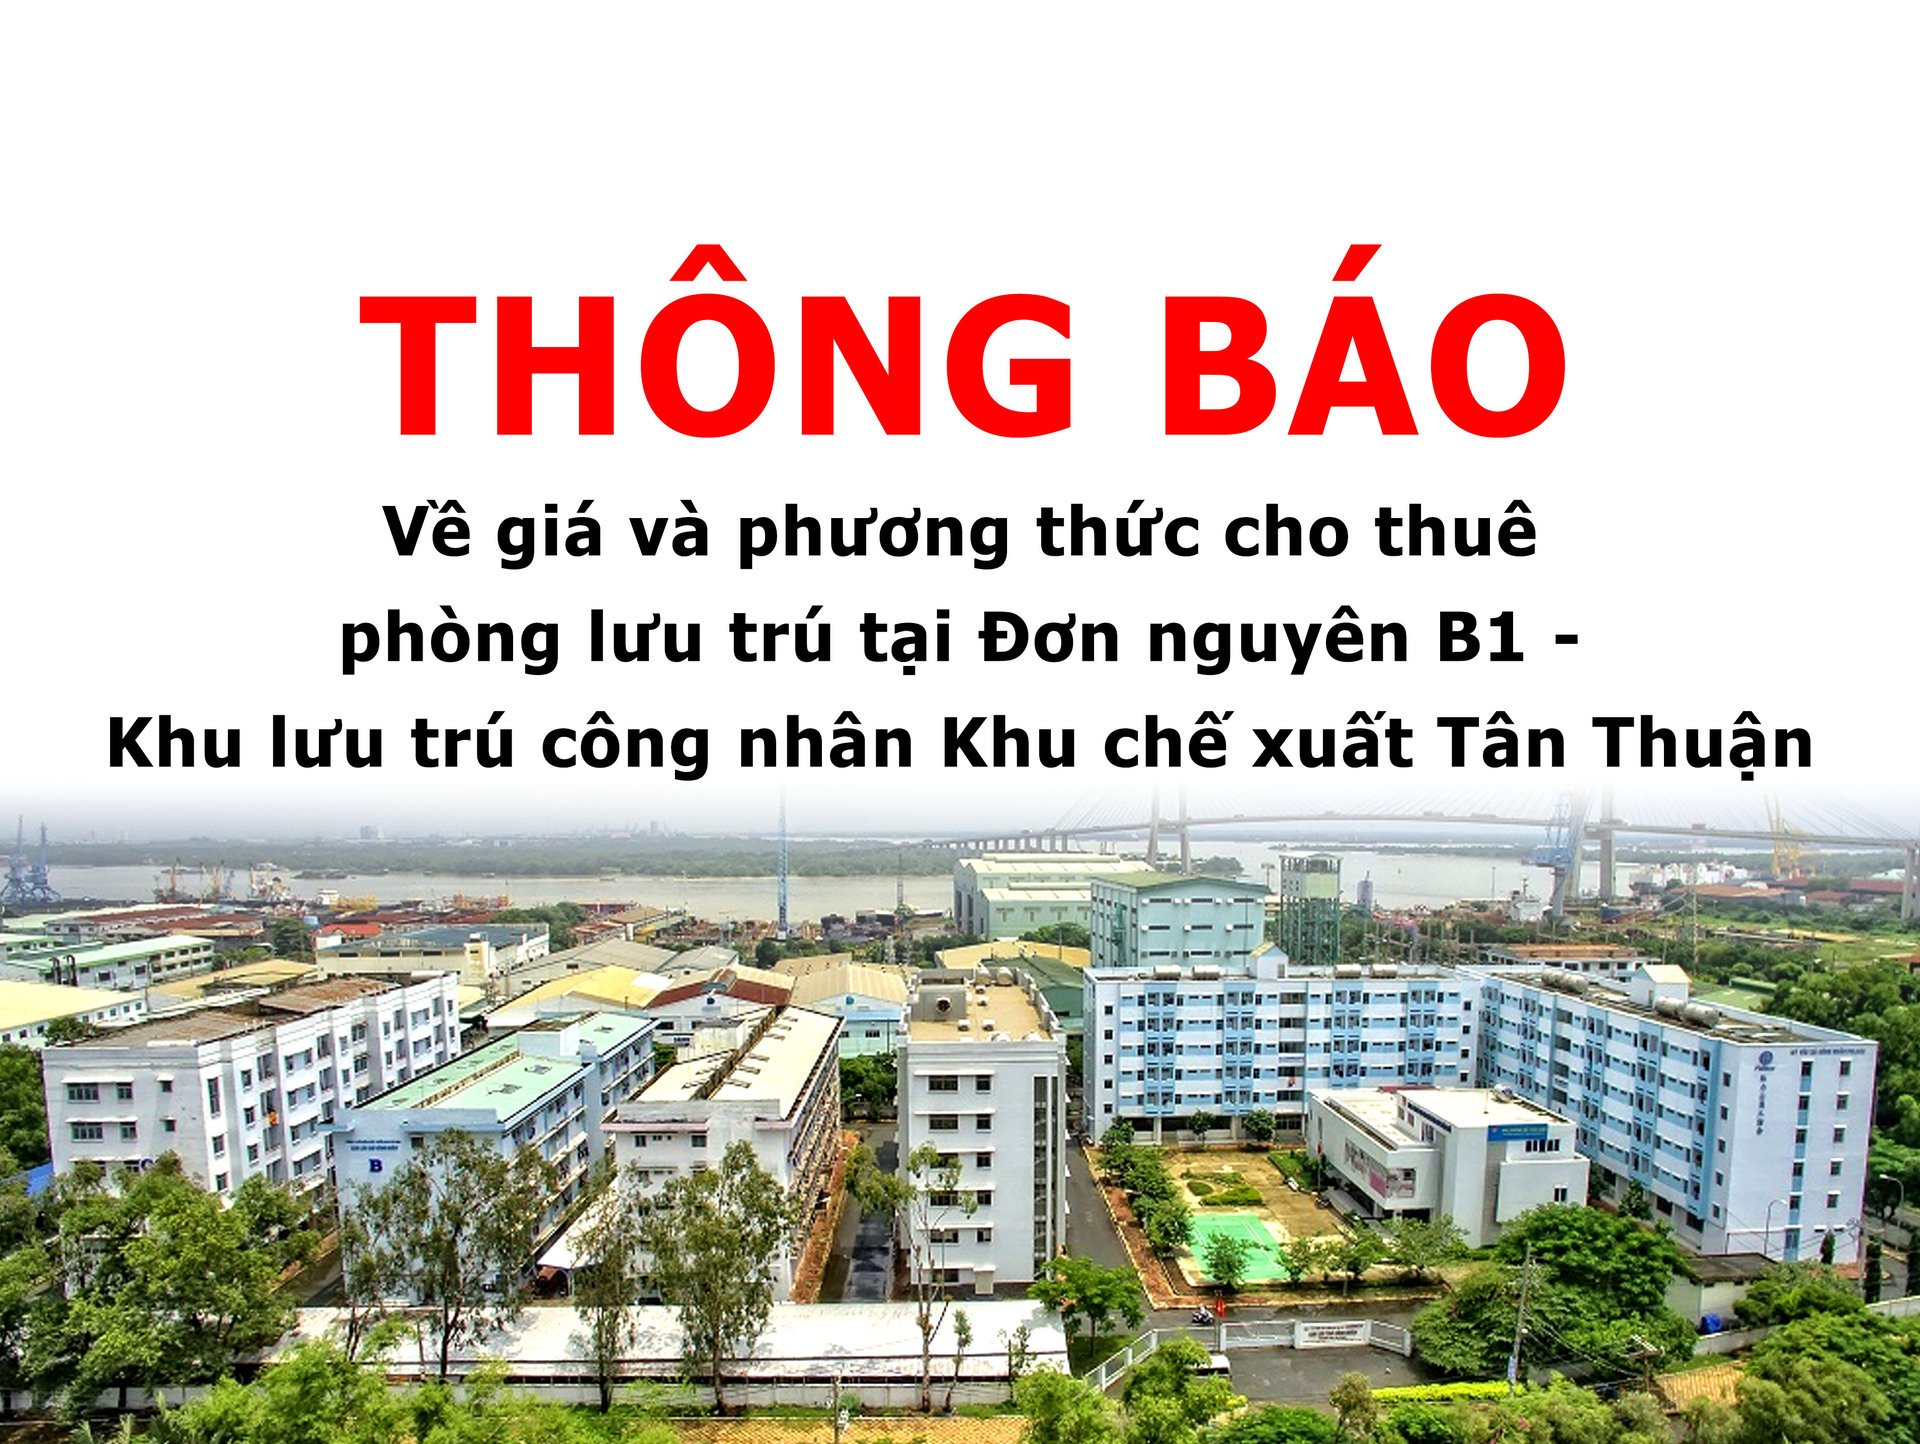 Thông báo về giá và phương thức cho thuê phòng lưu trú tại Đơn nguyên B1 - Khu lưu trú công nhân Khu chế xuất Tân Thuận